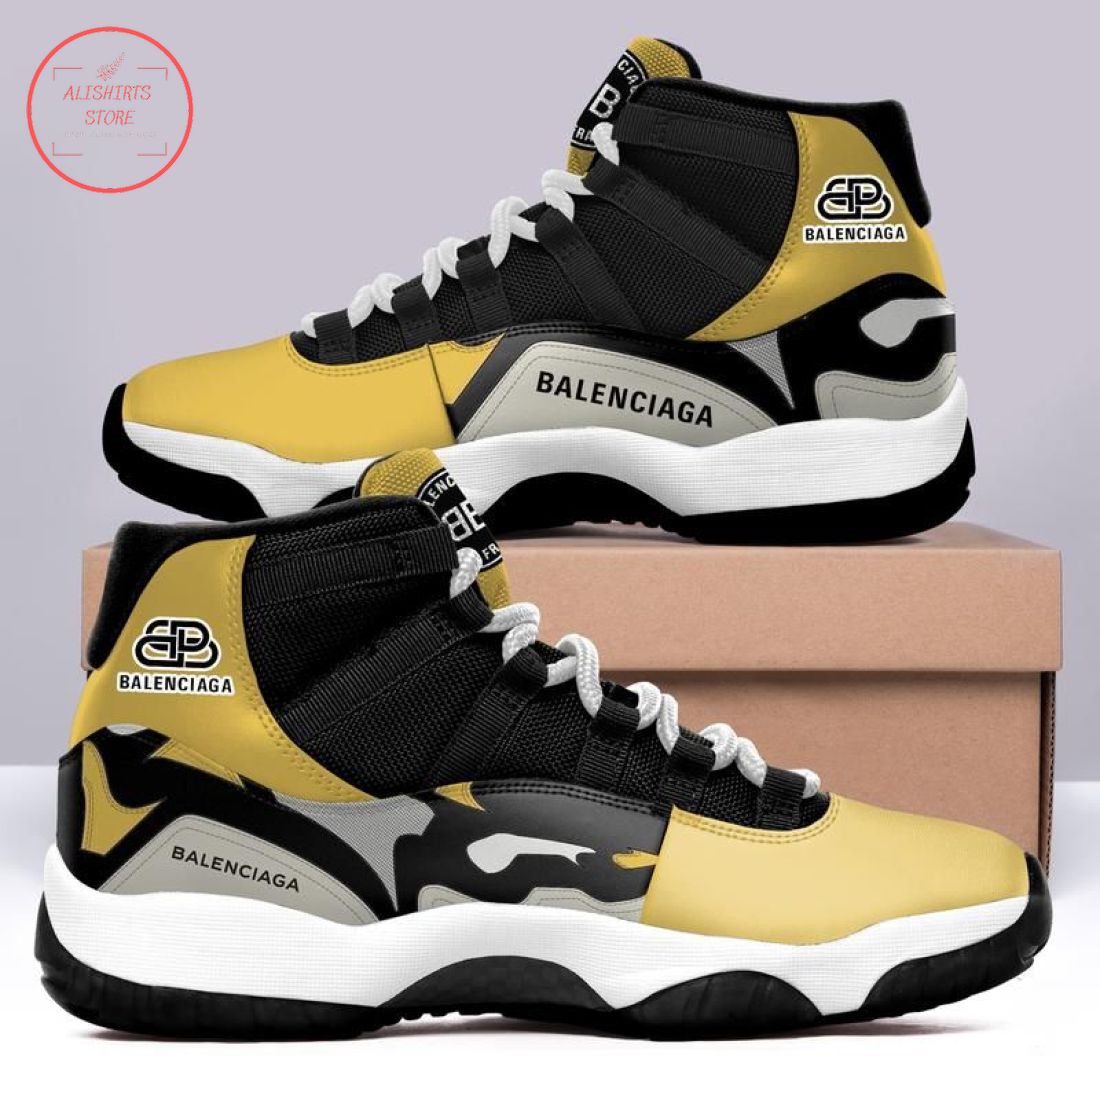 Balenciaga Air Jordan 11 Sneaker 2022 Shoes